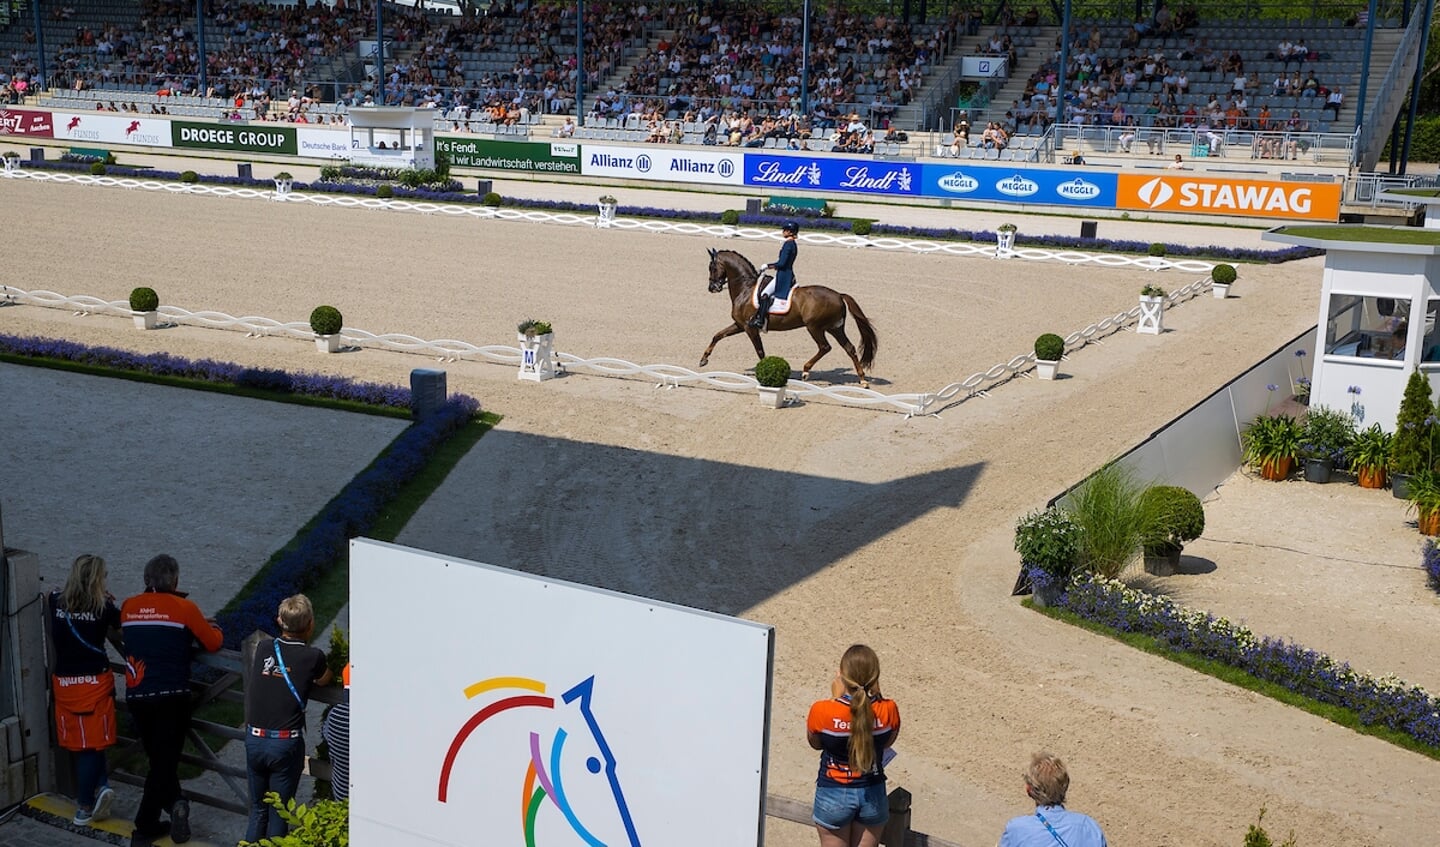 Dinja van Liere - Hartsuijker
World Equestrian Festival CHIO Aachen 2022
© DigiShots